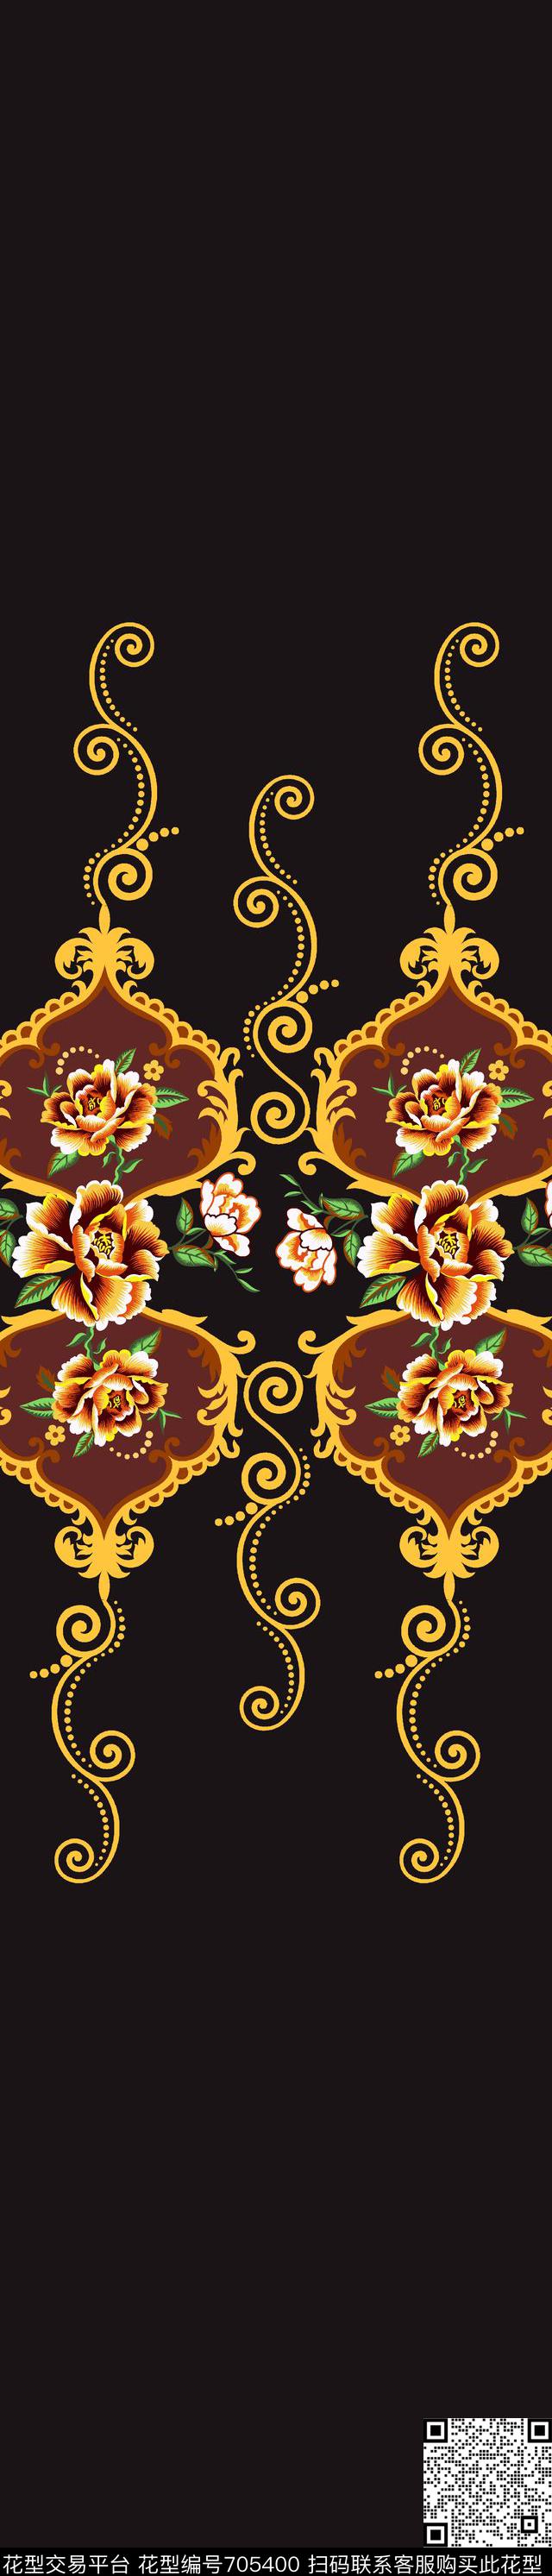 007.jpg - 705400 - 绣球花 康乃馨 花瓣 - 传统印花花型 － 窗帘花型设计 － 瓦栏